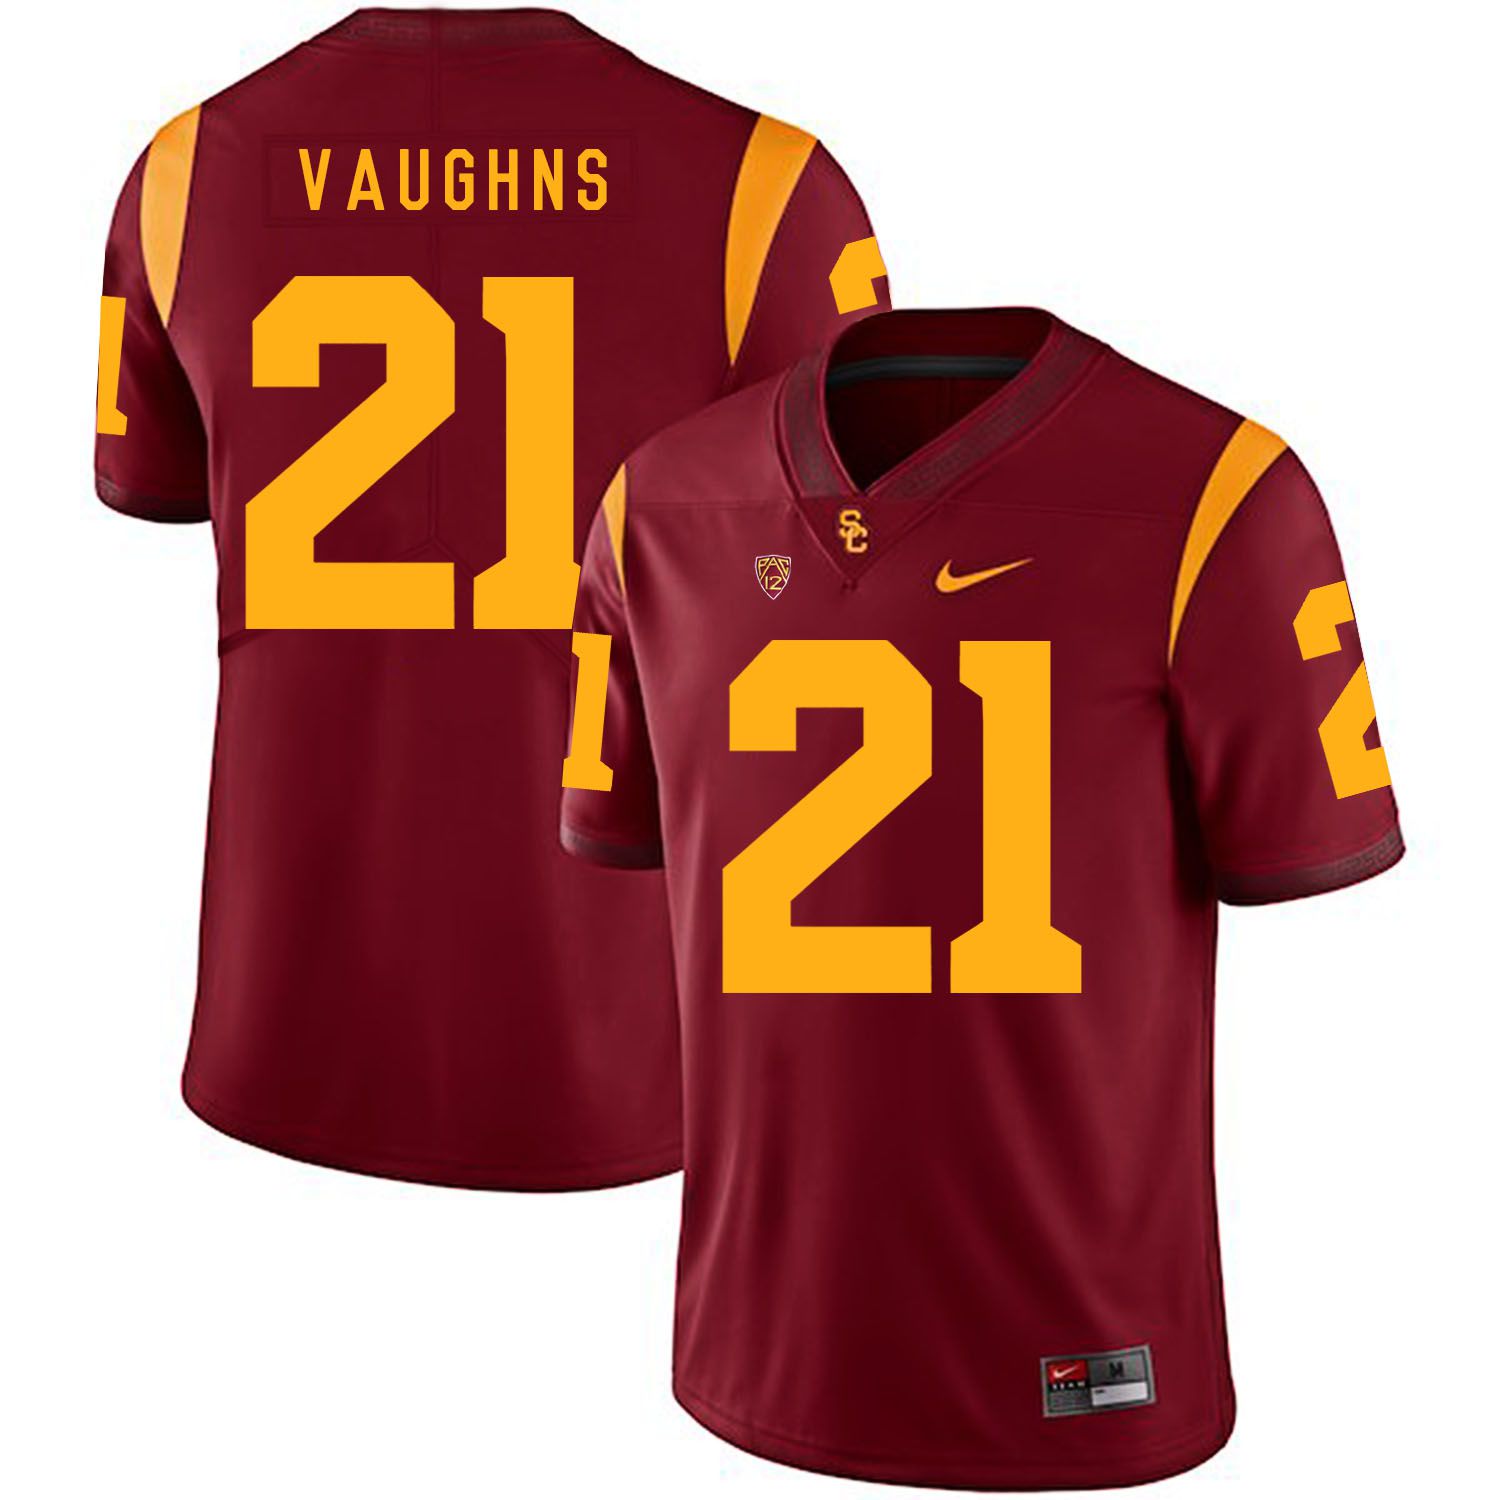 Men USC Trojans #21 Vaughns Red Customized NCAA Jerseys